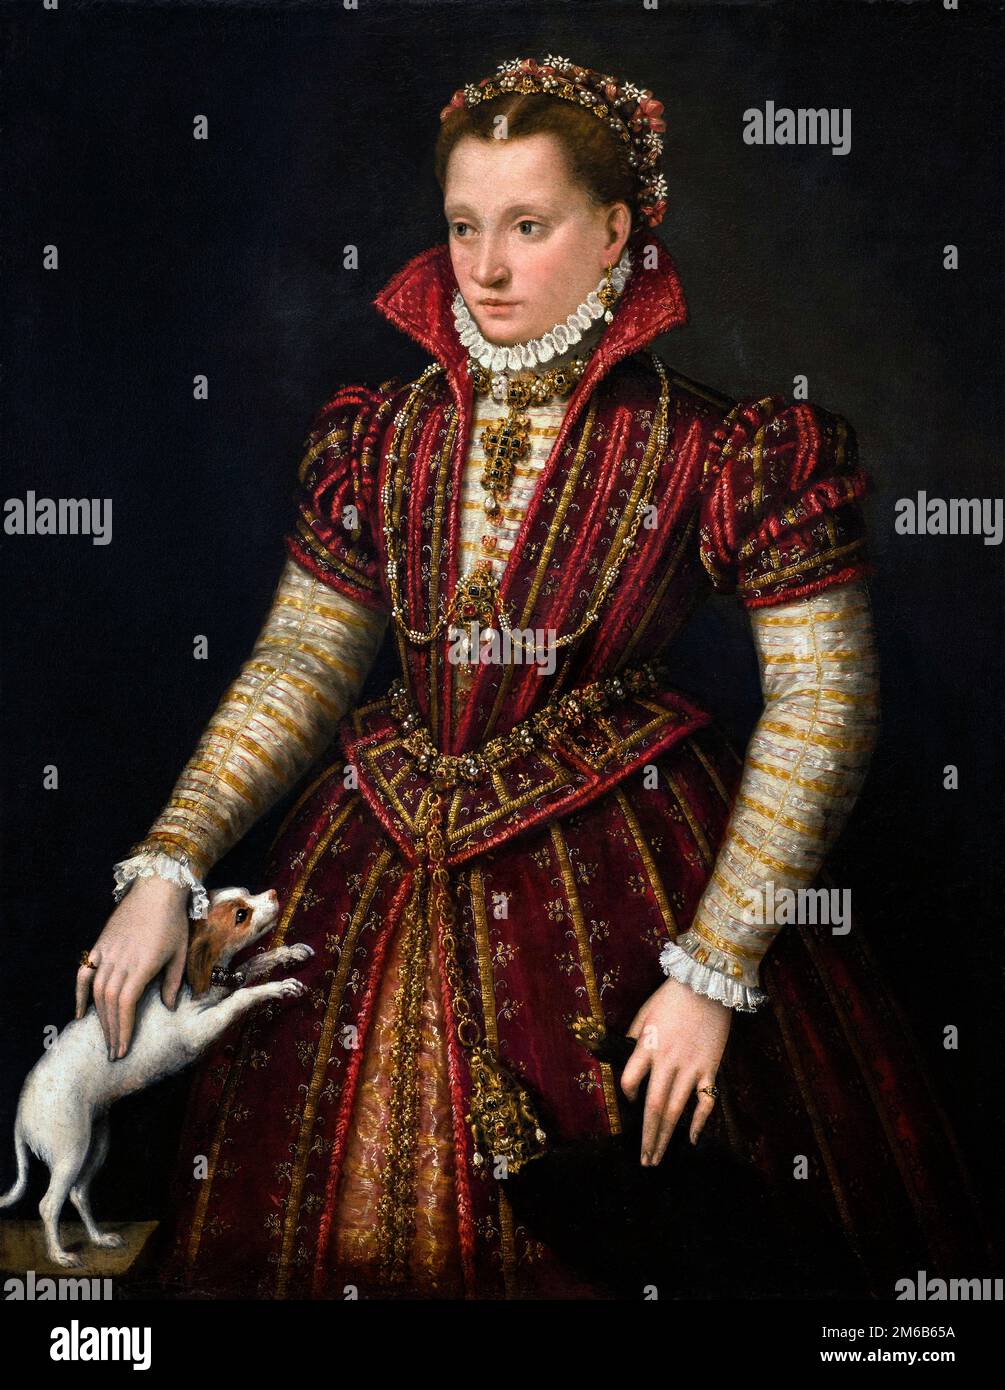 Lavinia Fontana. Portrait d'une noble par le peintre manneriste bolognaise, Lavinia Fontana (1552-1614), huile sur toile, vers 1580 Banque D'Images